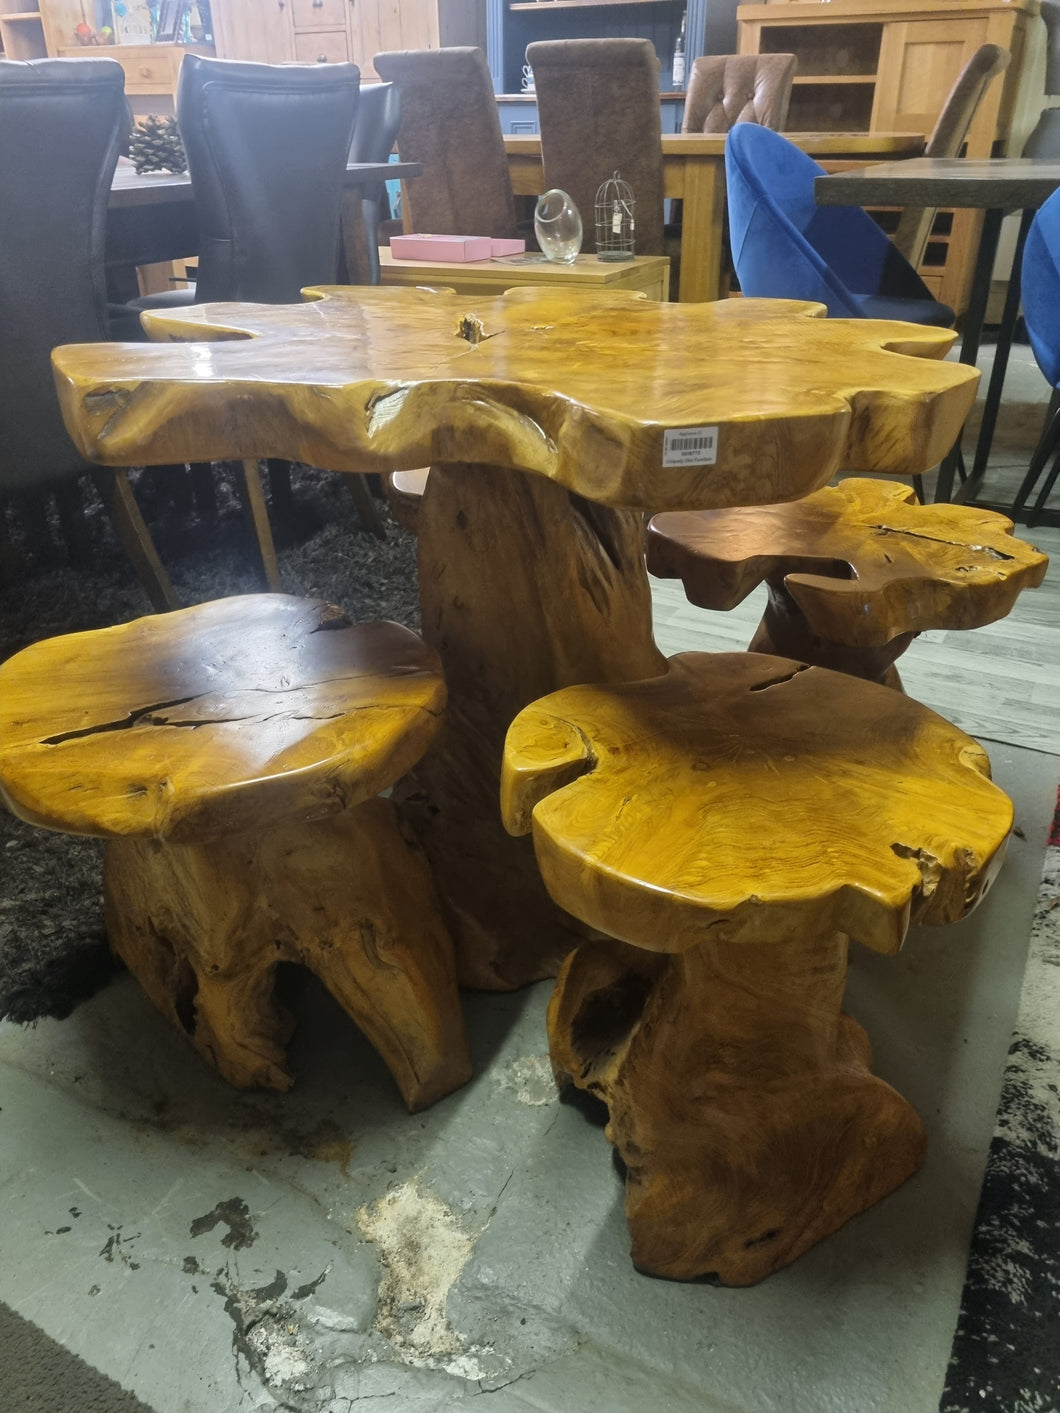 Welland tree stump table and stools